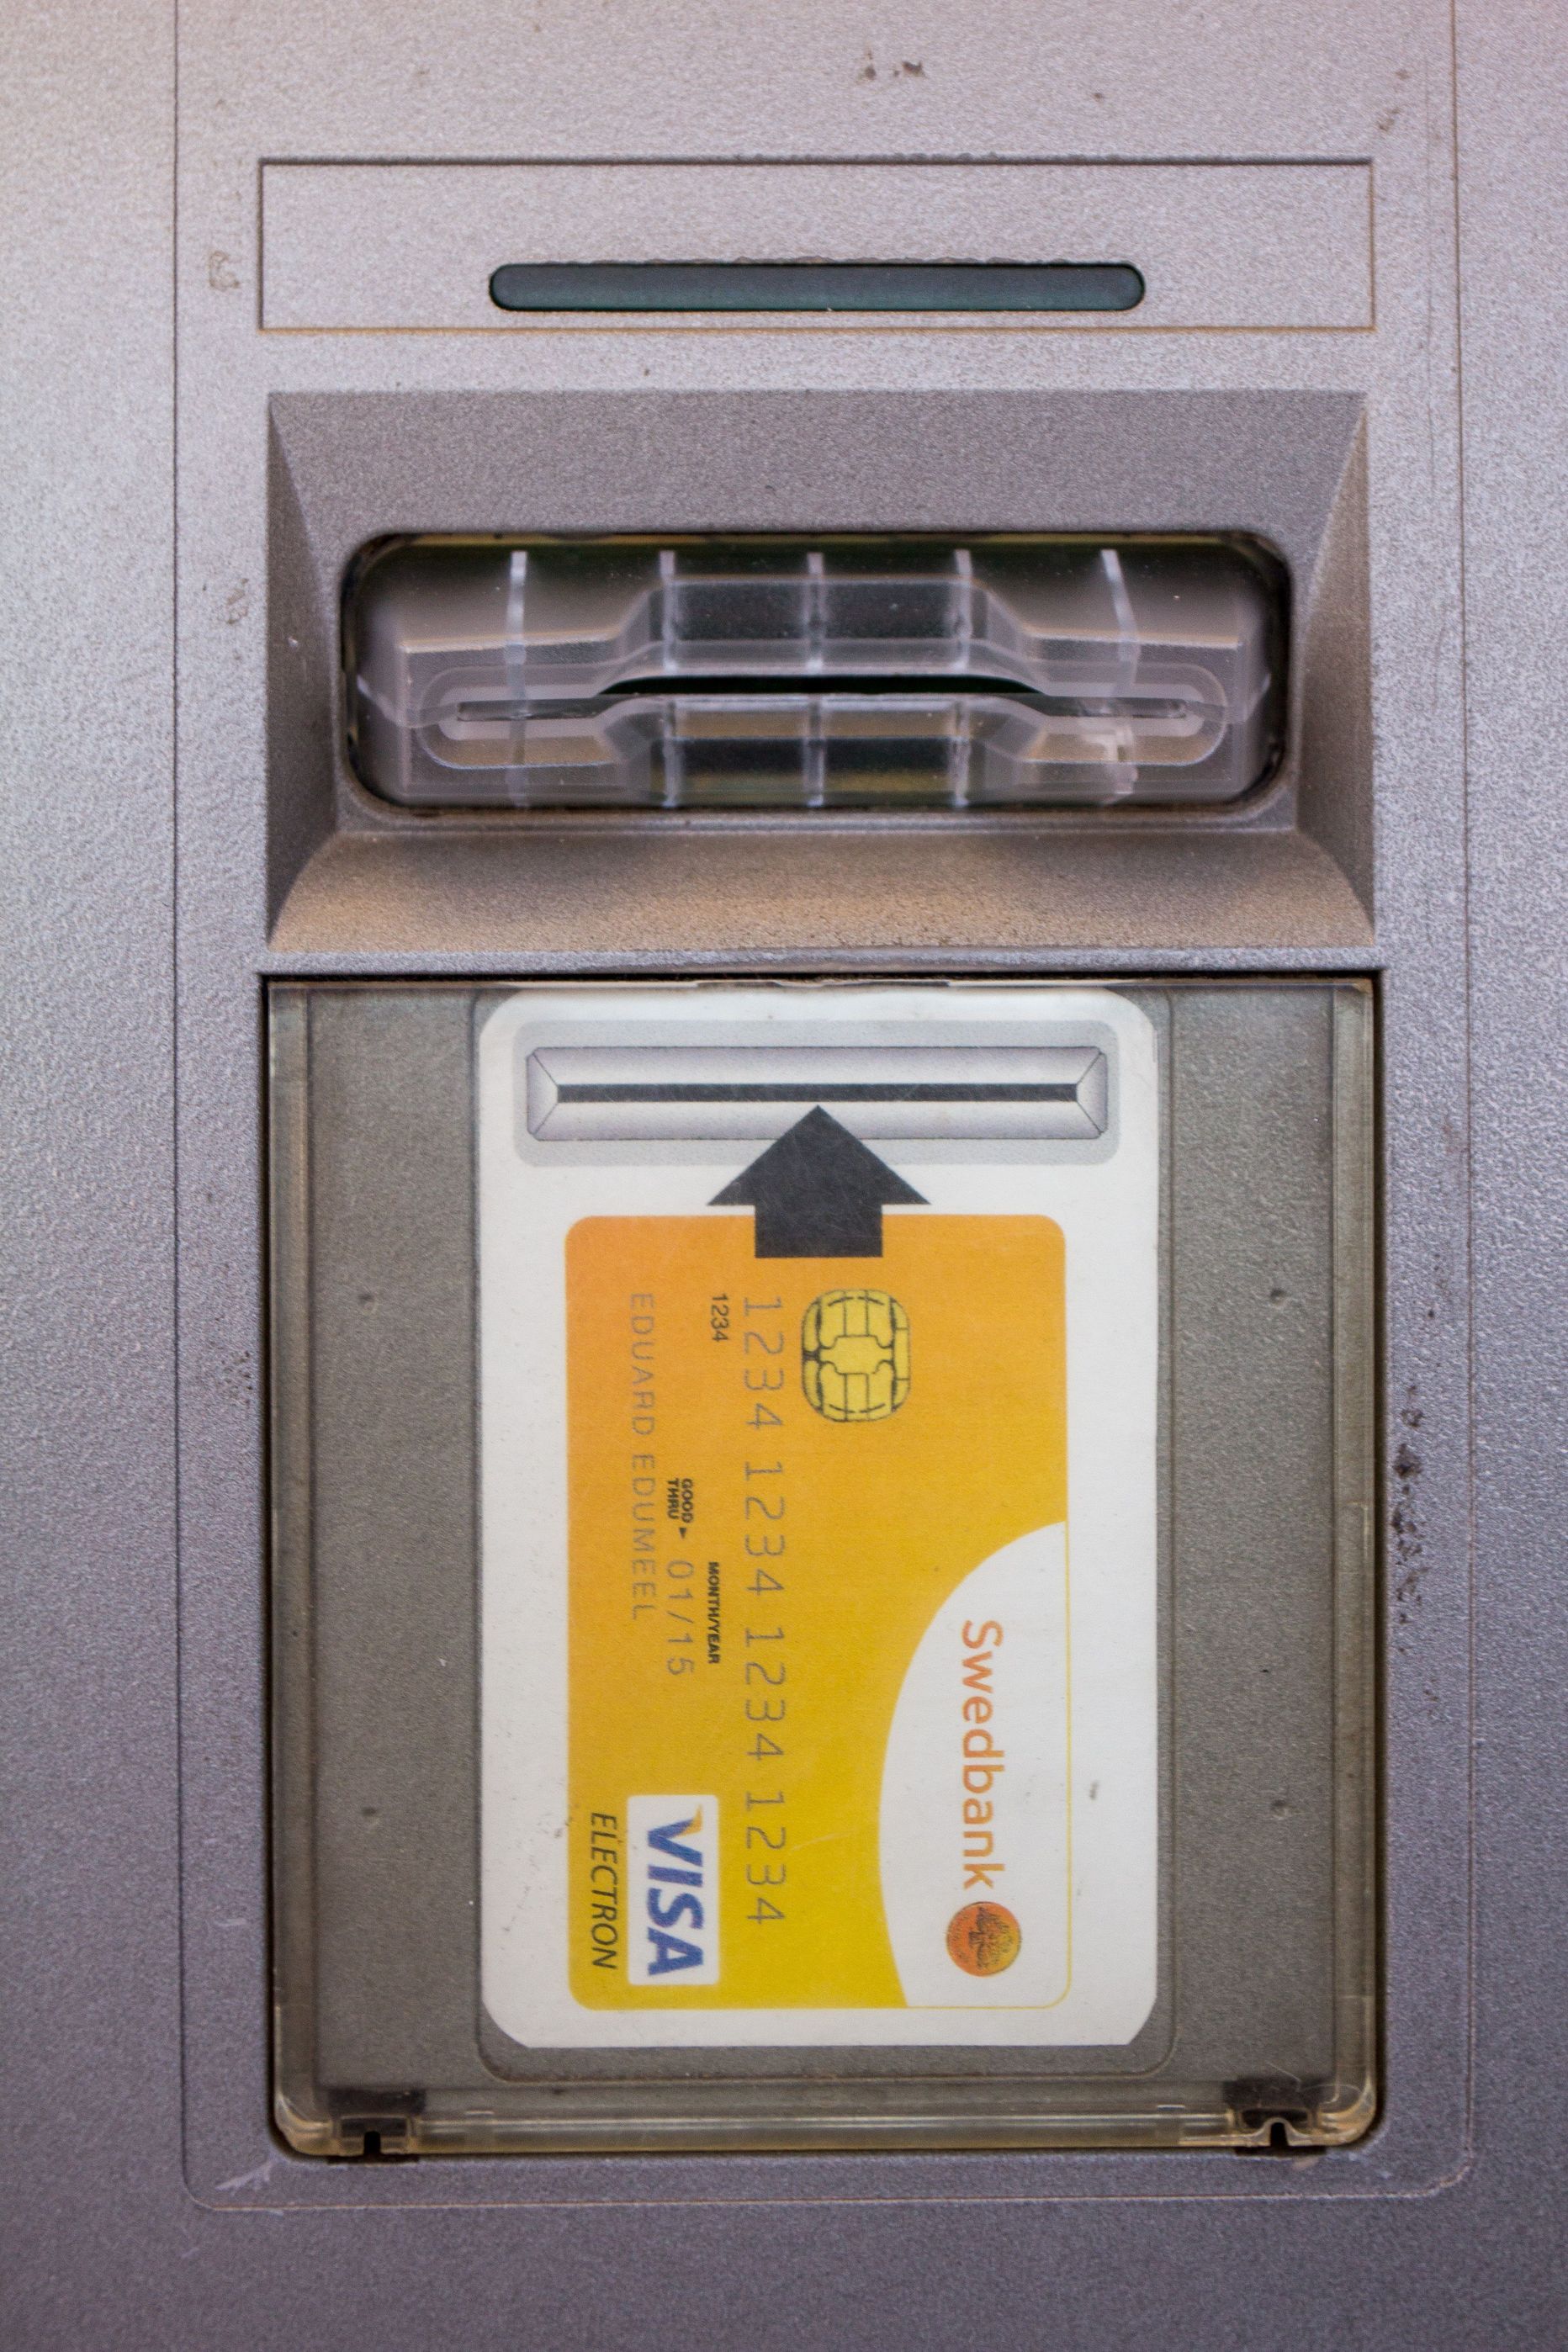 Vandaalid on asunud sularahaautomaatide kaardipilusid sulatama.